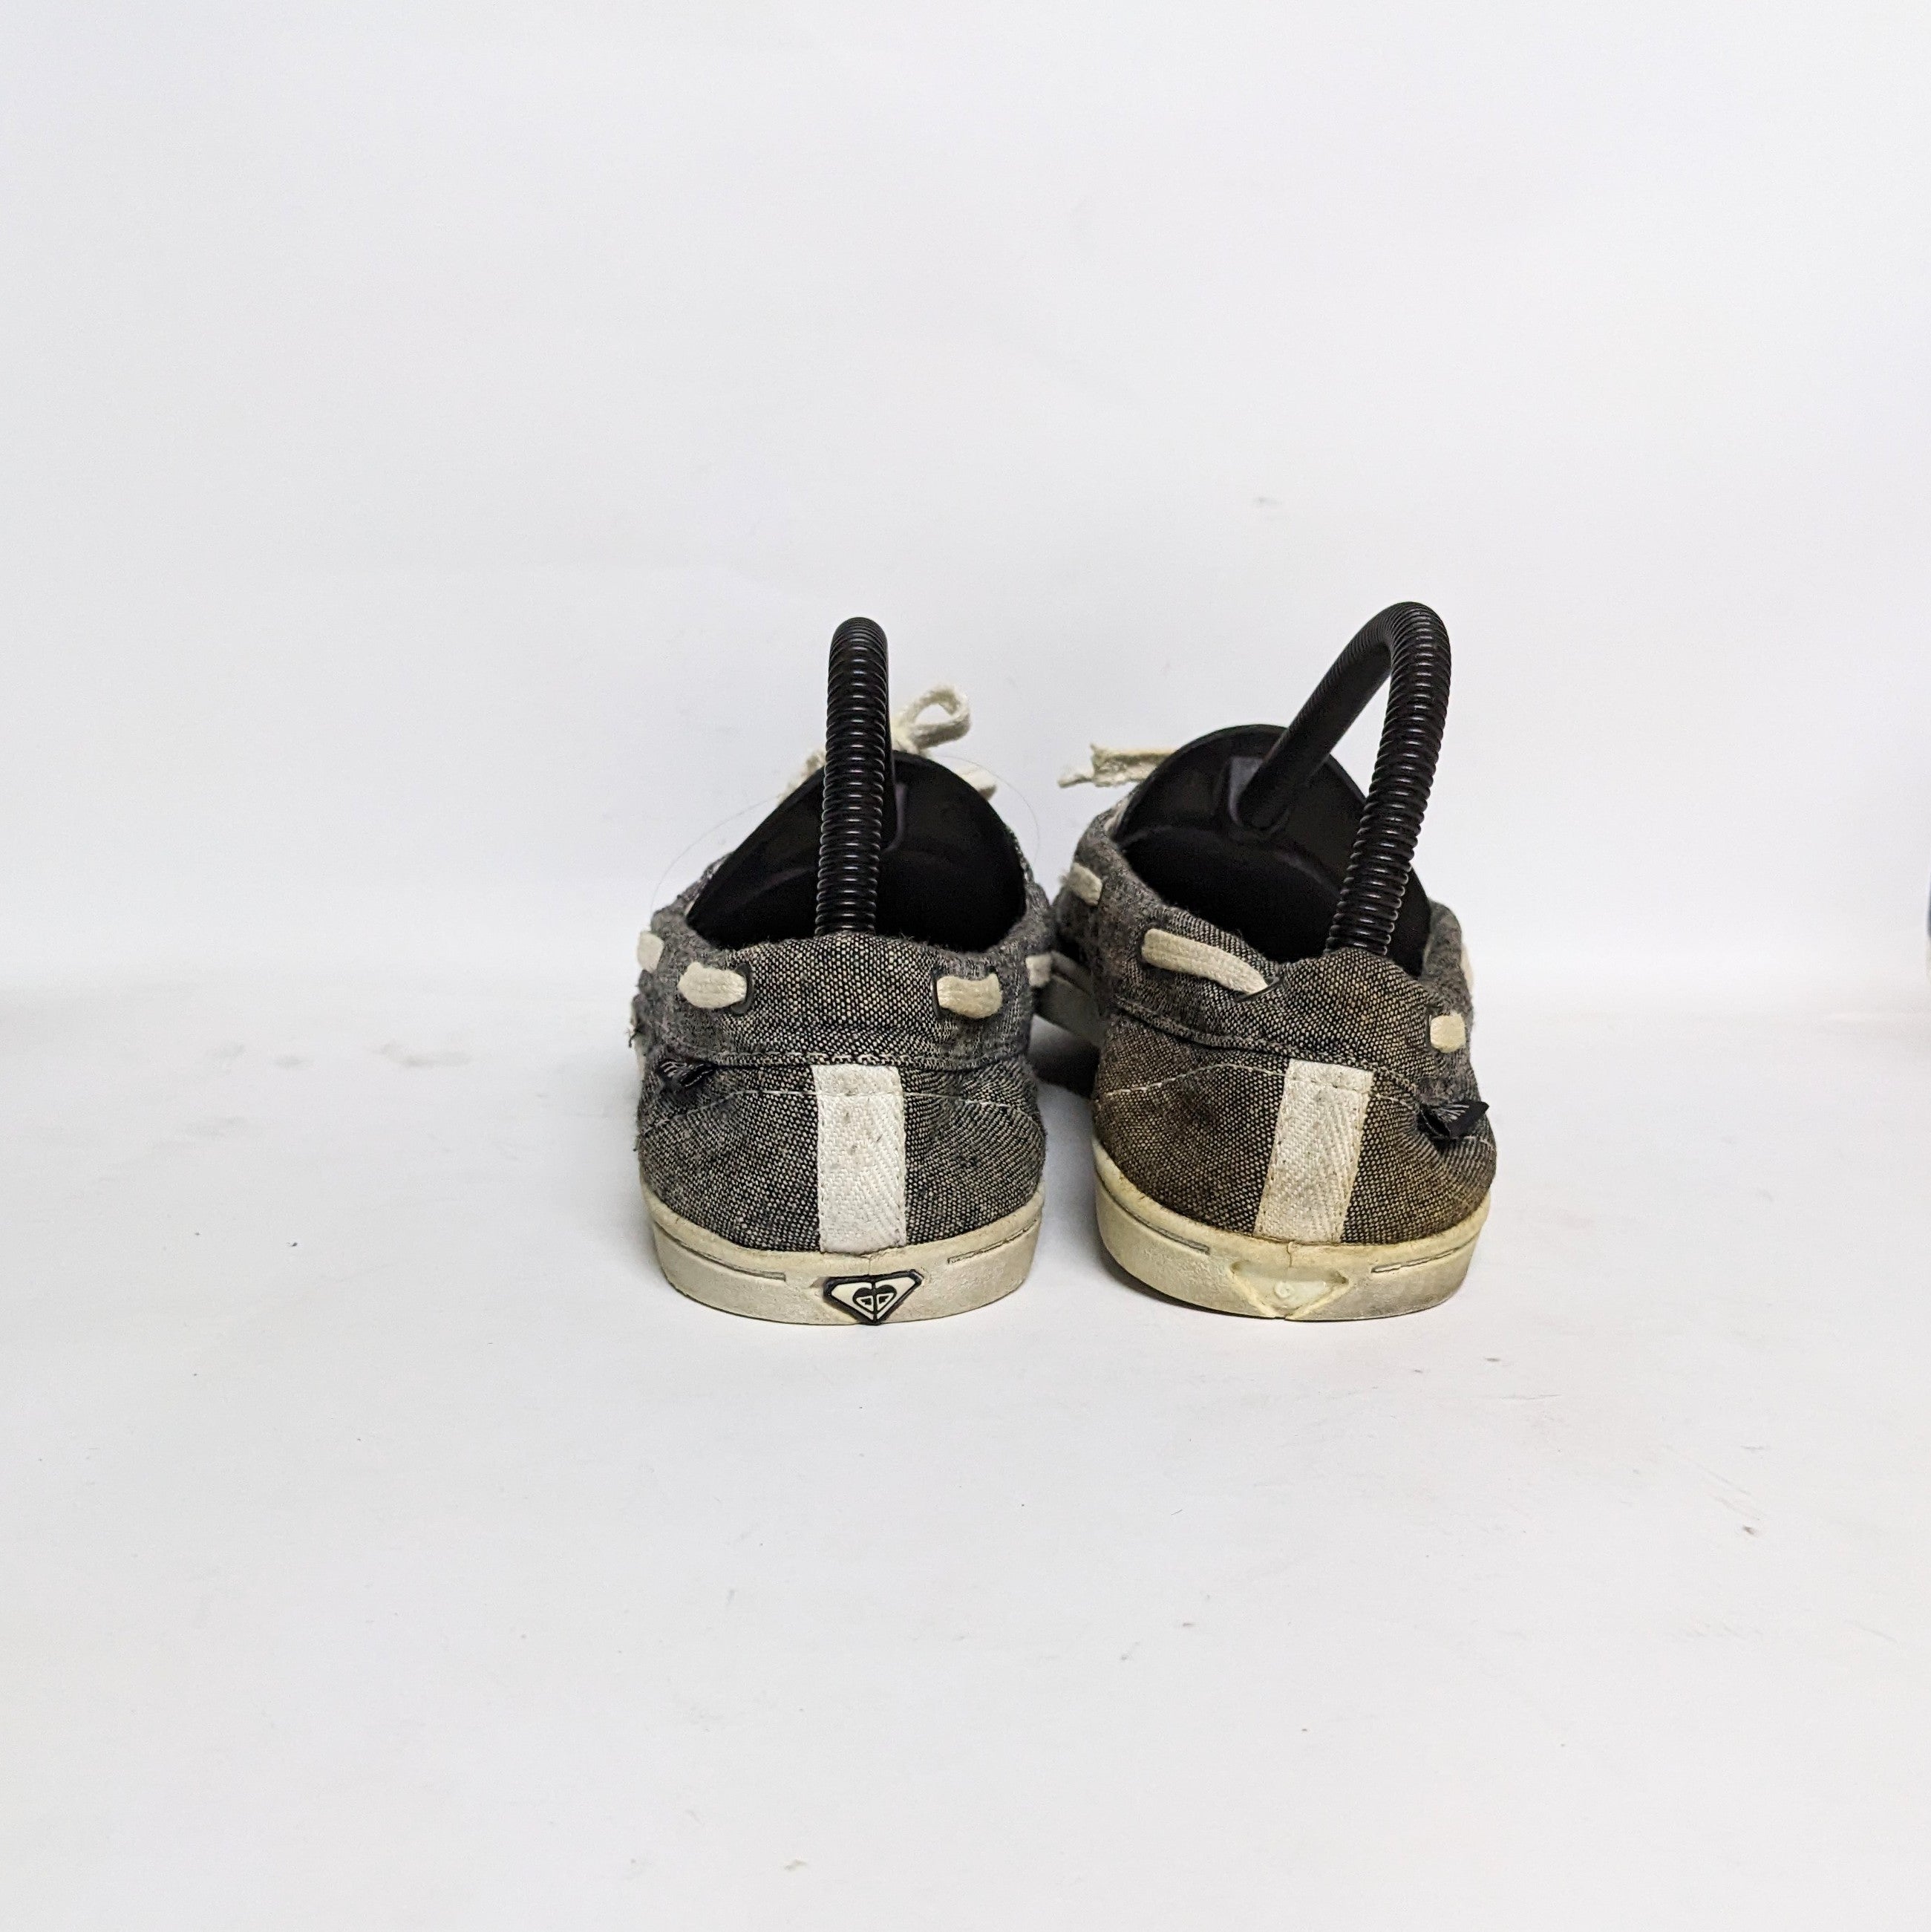 أحذية رياضية مستعملة مستوردة باللون الرمادي بتصميم جديد